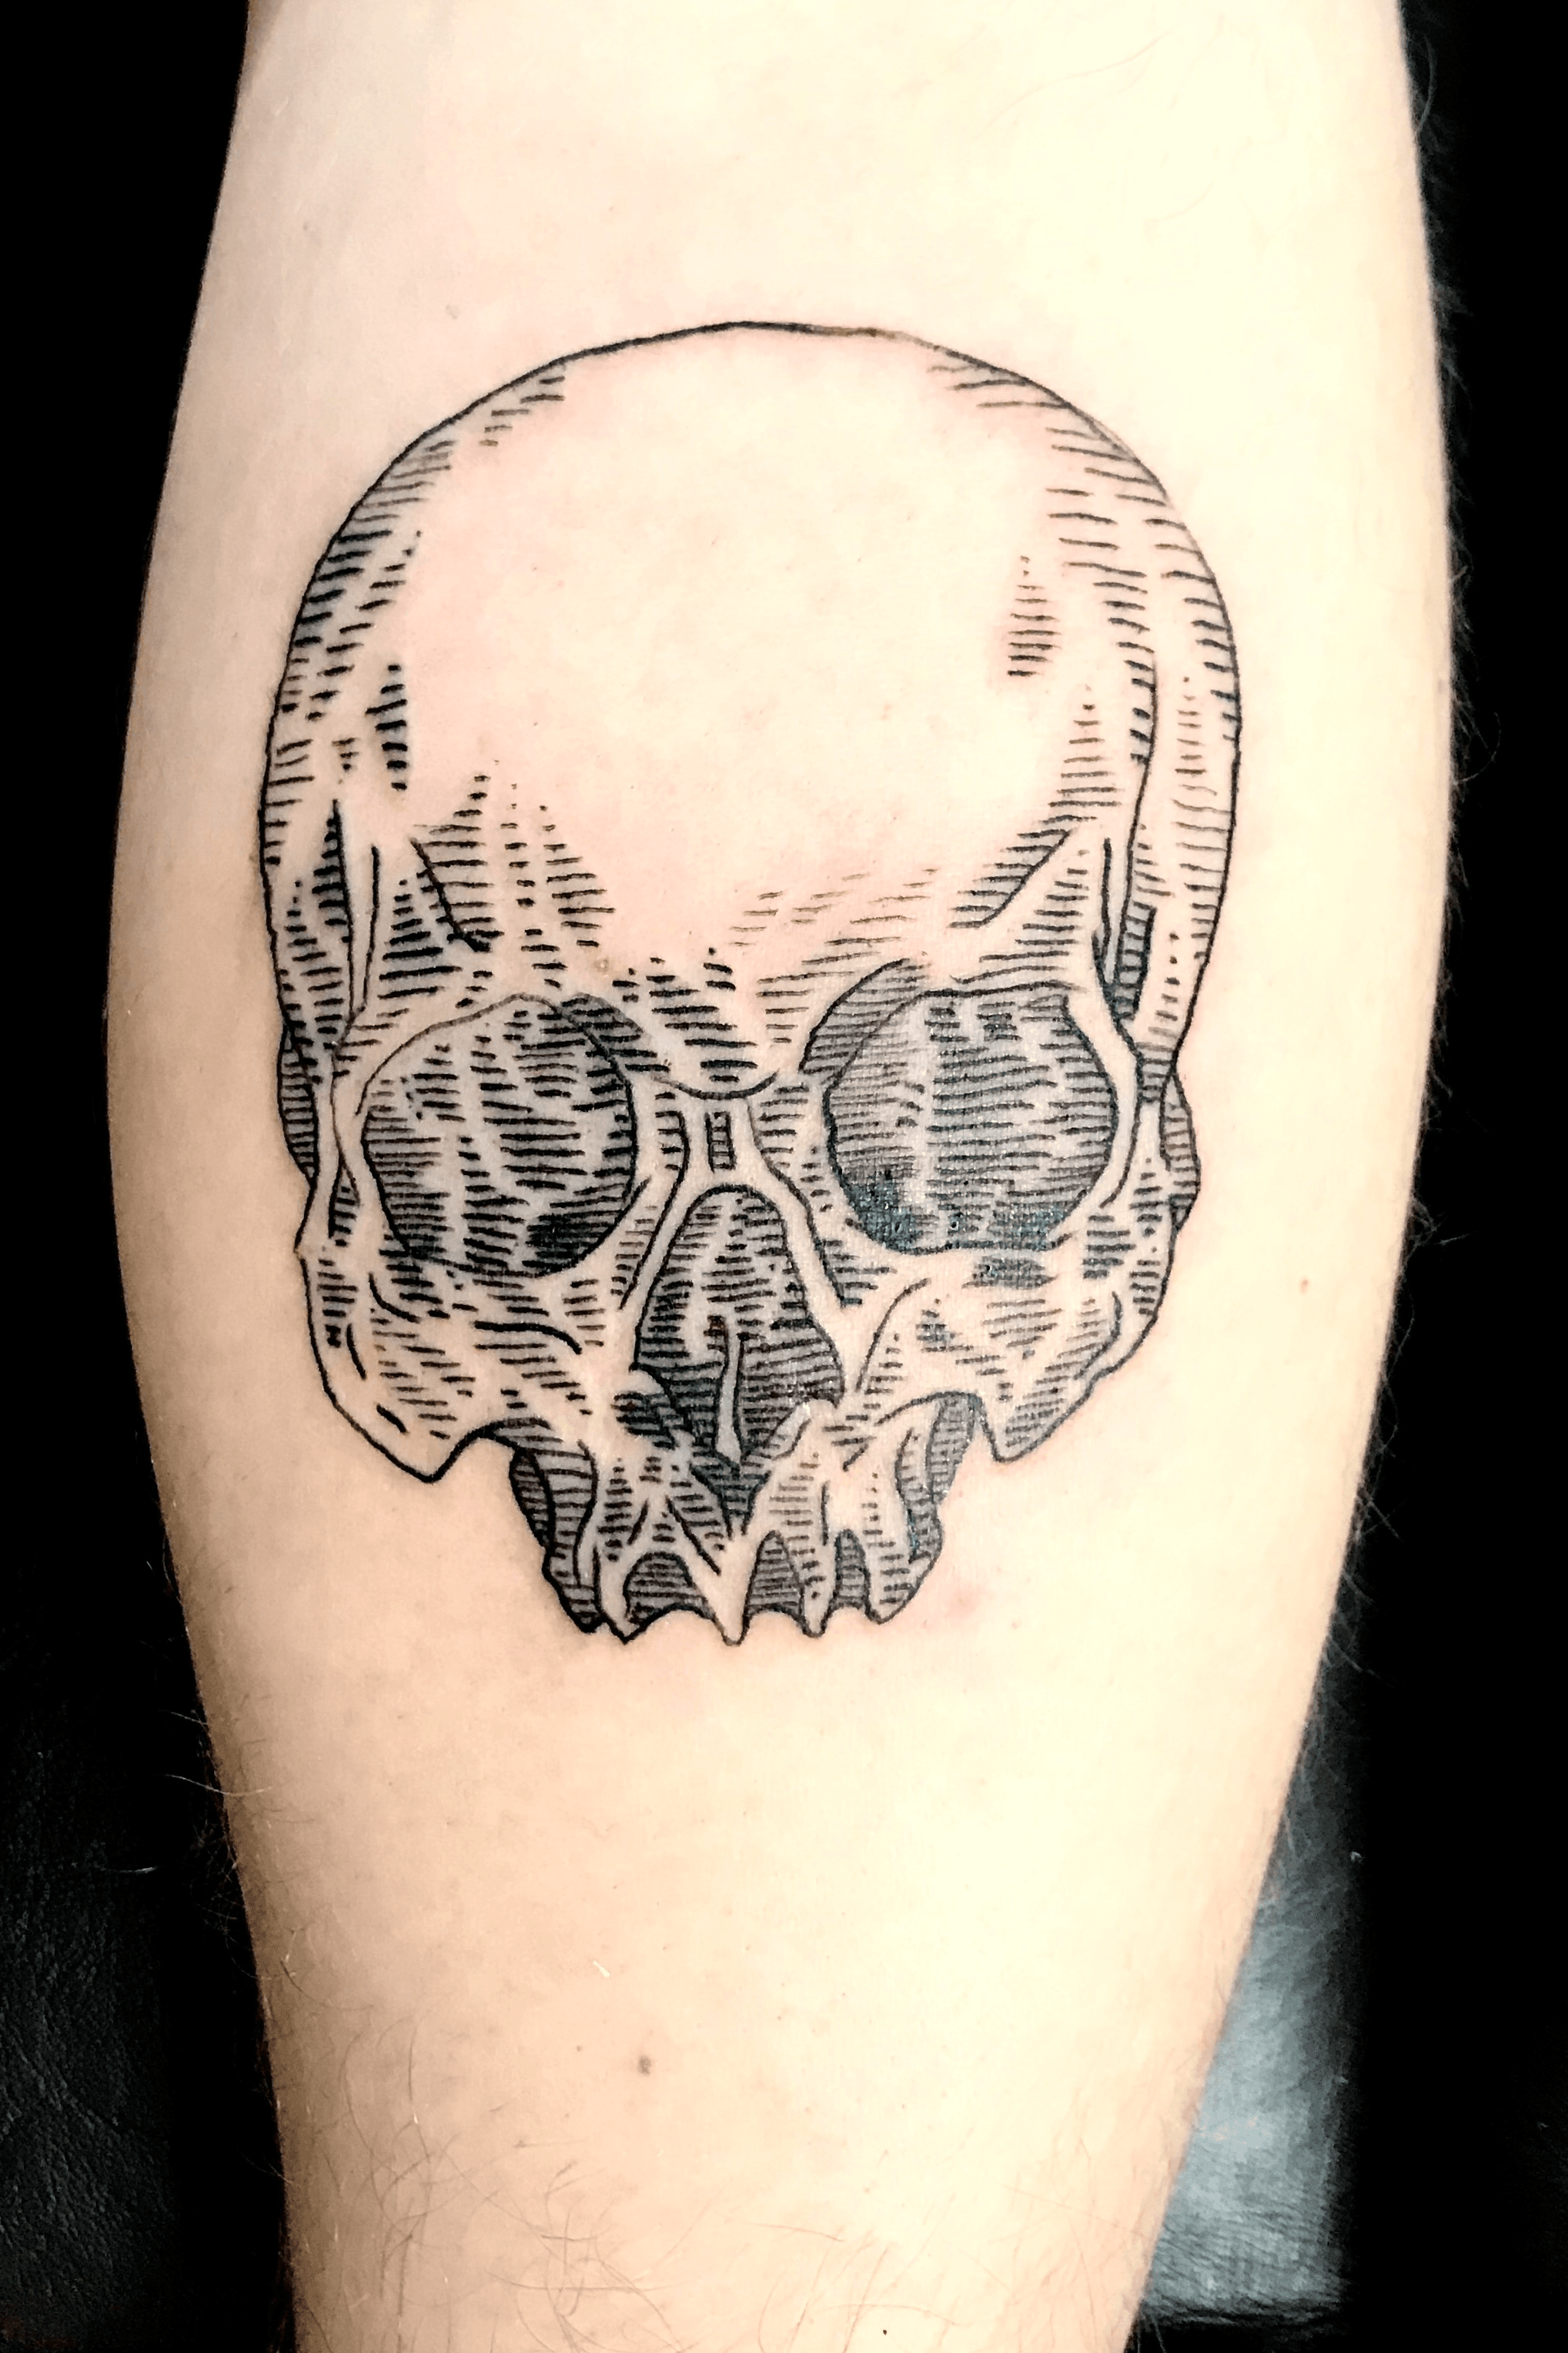 18 Amazing Skull Tattoo Designs  Club Tattoo